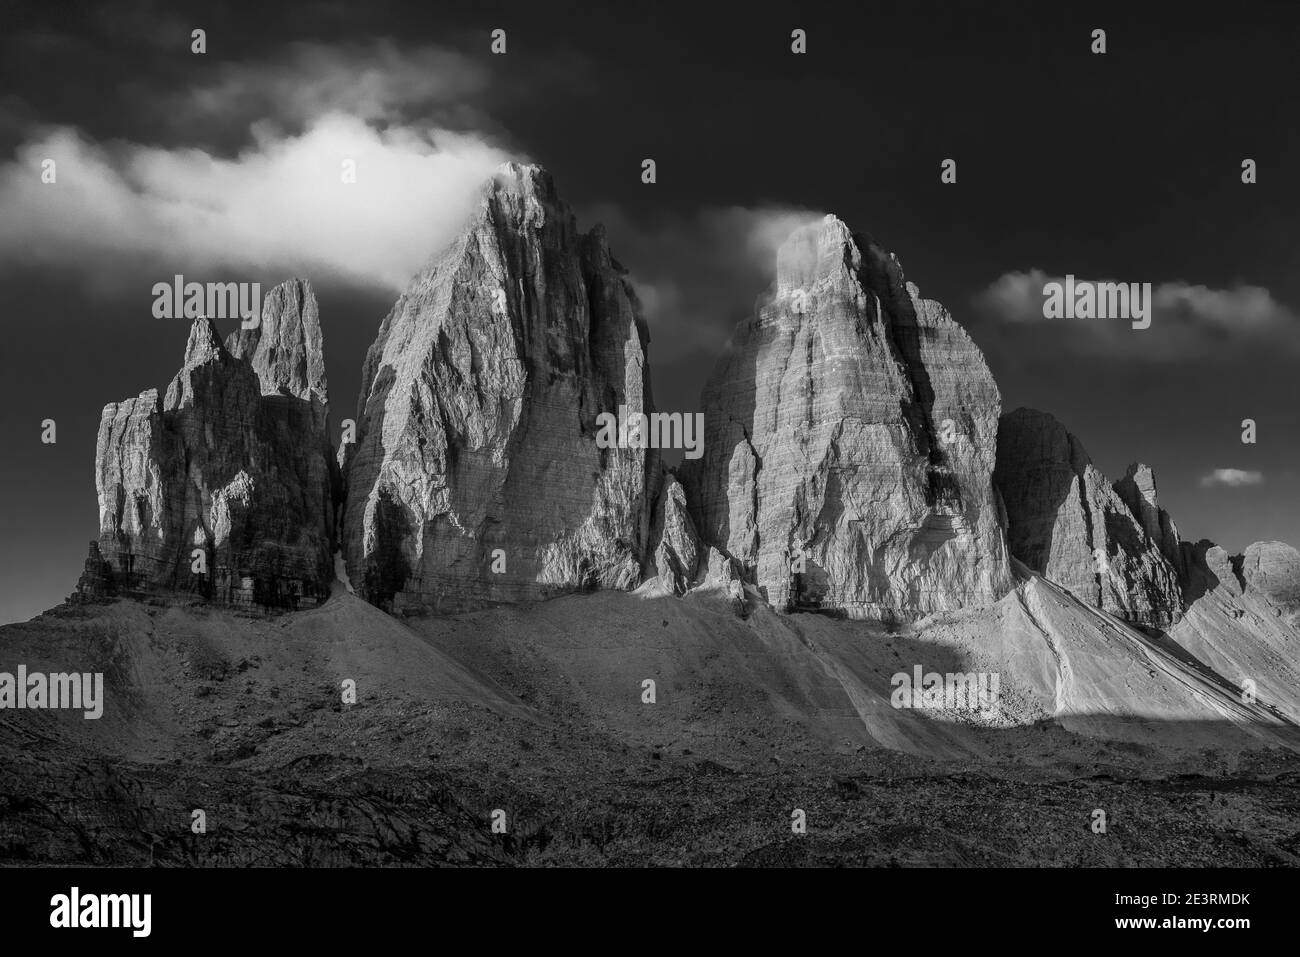 Italia. Suggestivo scenario montano in bianco e nero sulle montagne delle Dolomiti italiane del Sud Tirolo, l'Alto Adige visto qui con le famose vette del Drei Zinnen, la Cime di Lavaredo nel Gruppo dolomitico Sesto Foto Stock